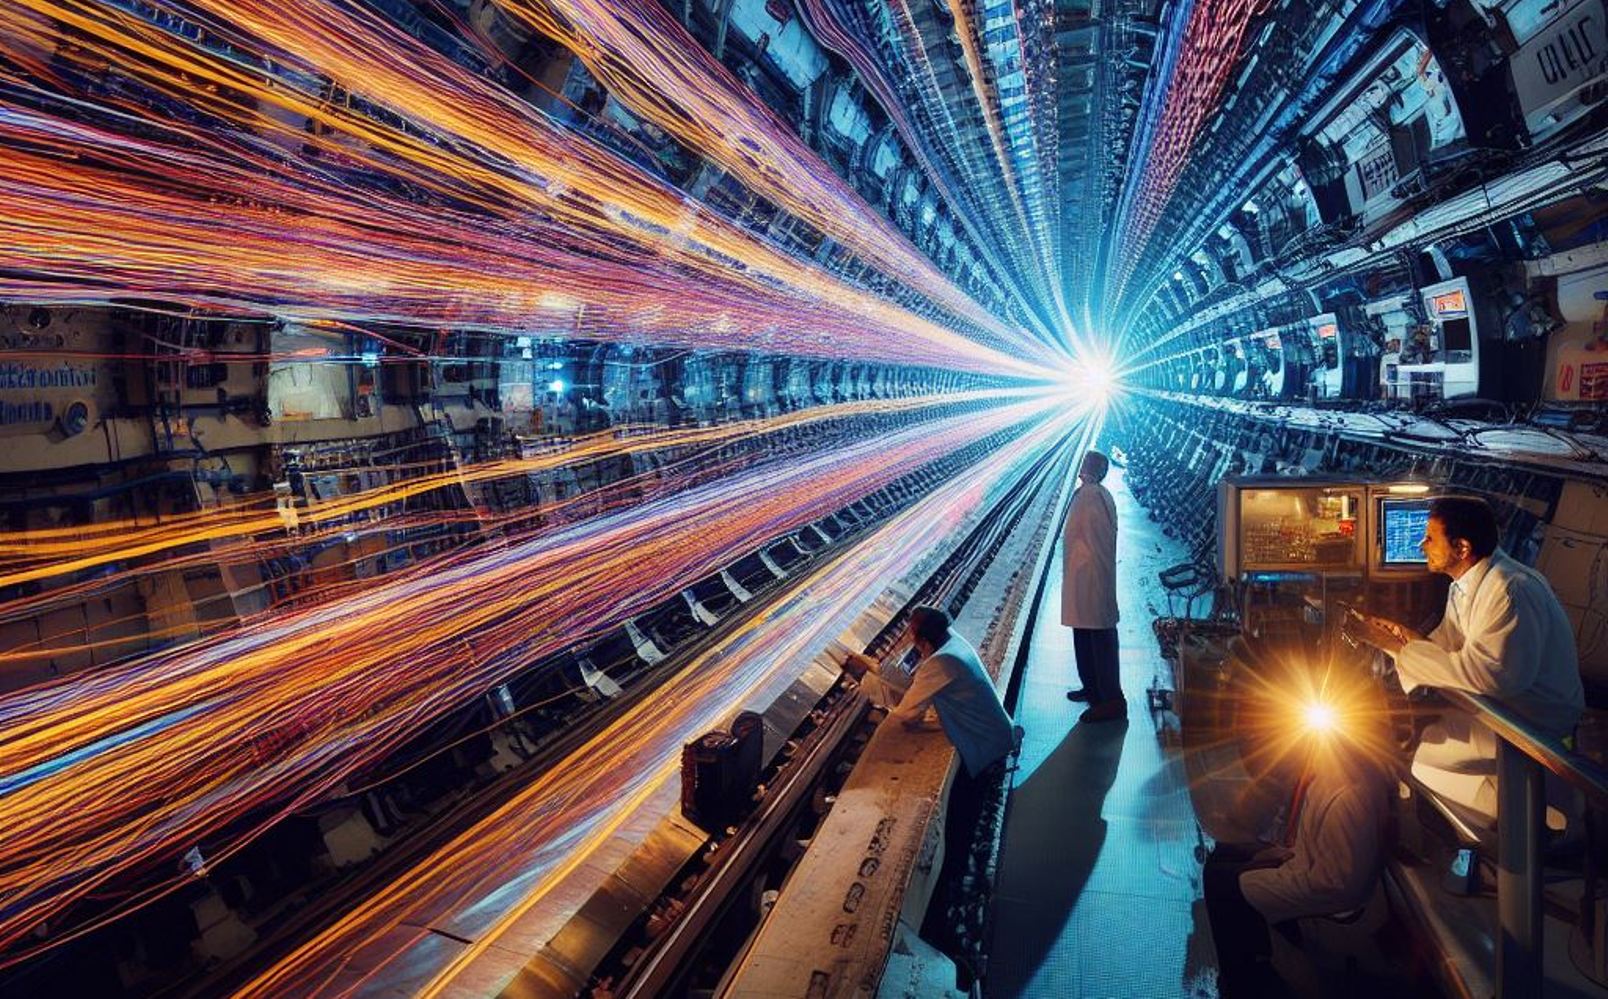 La chasse aux particules supersymétriques au LHC vue par l'IA DALL-E. © 2023 Microsoft Corporation